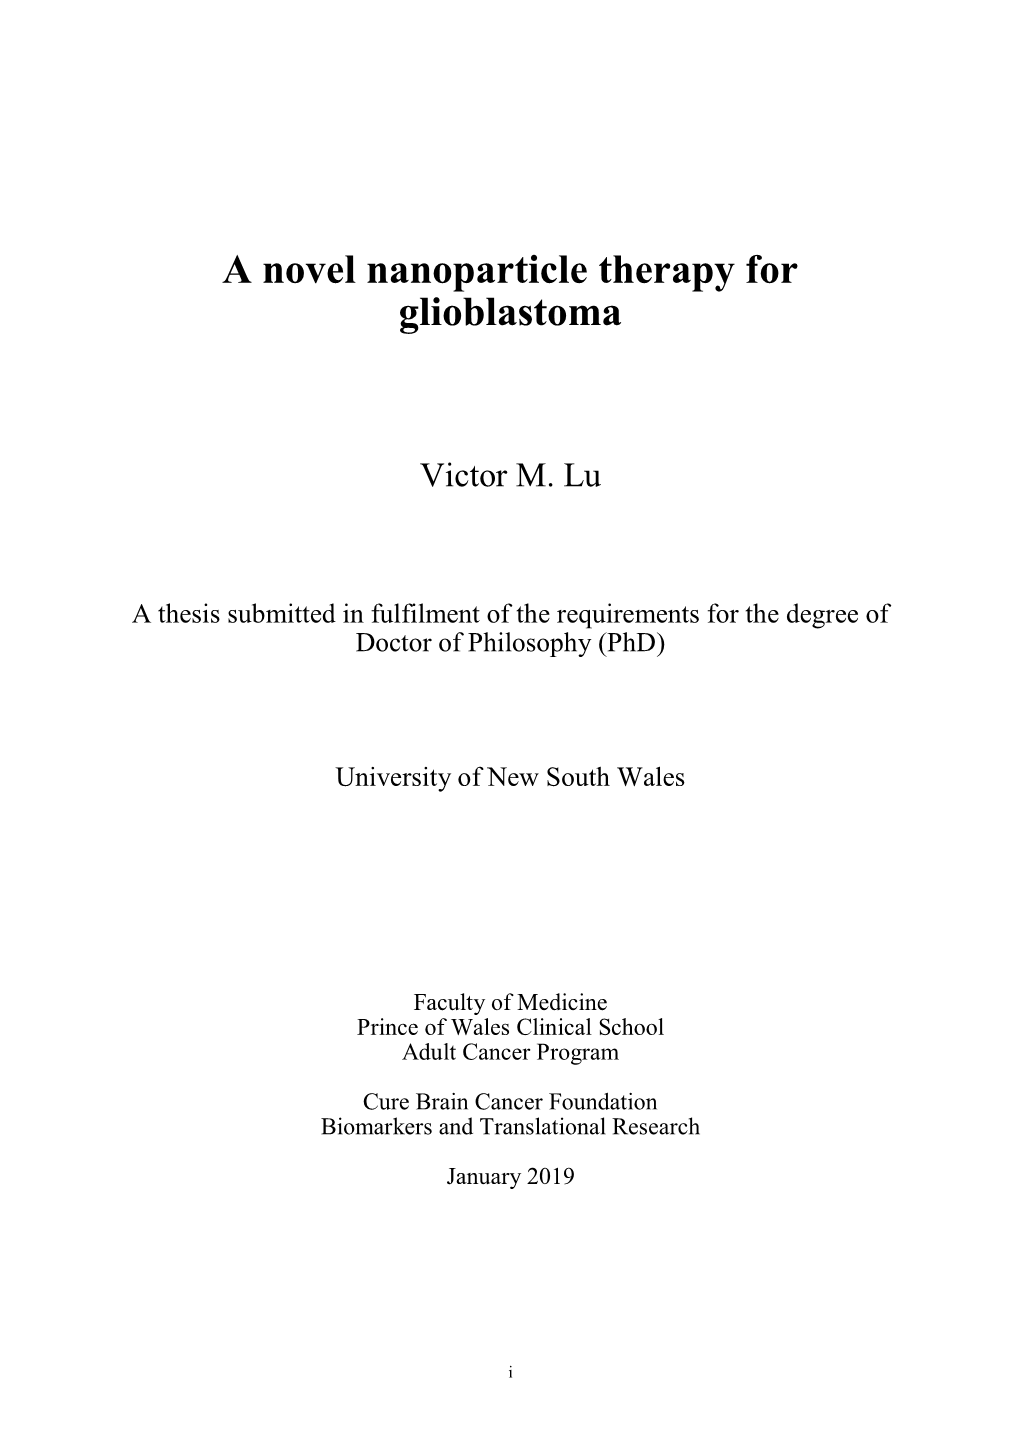 A Novel Nanoparticle Therapy for Glioblastoma